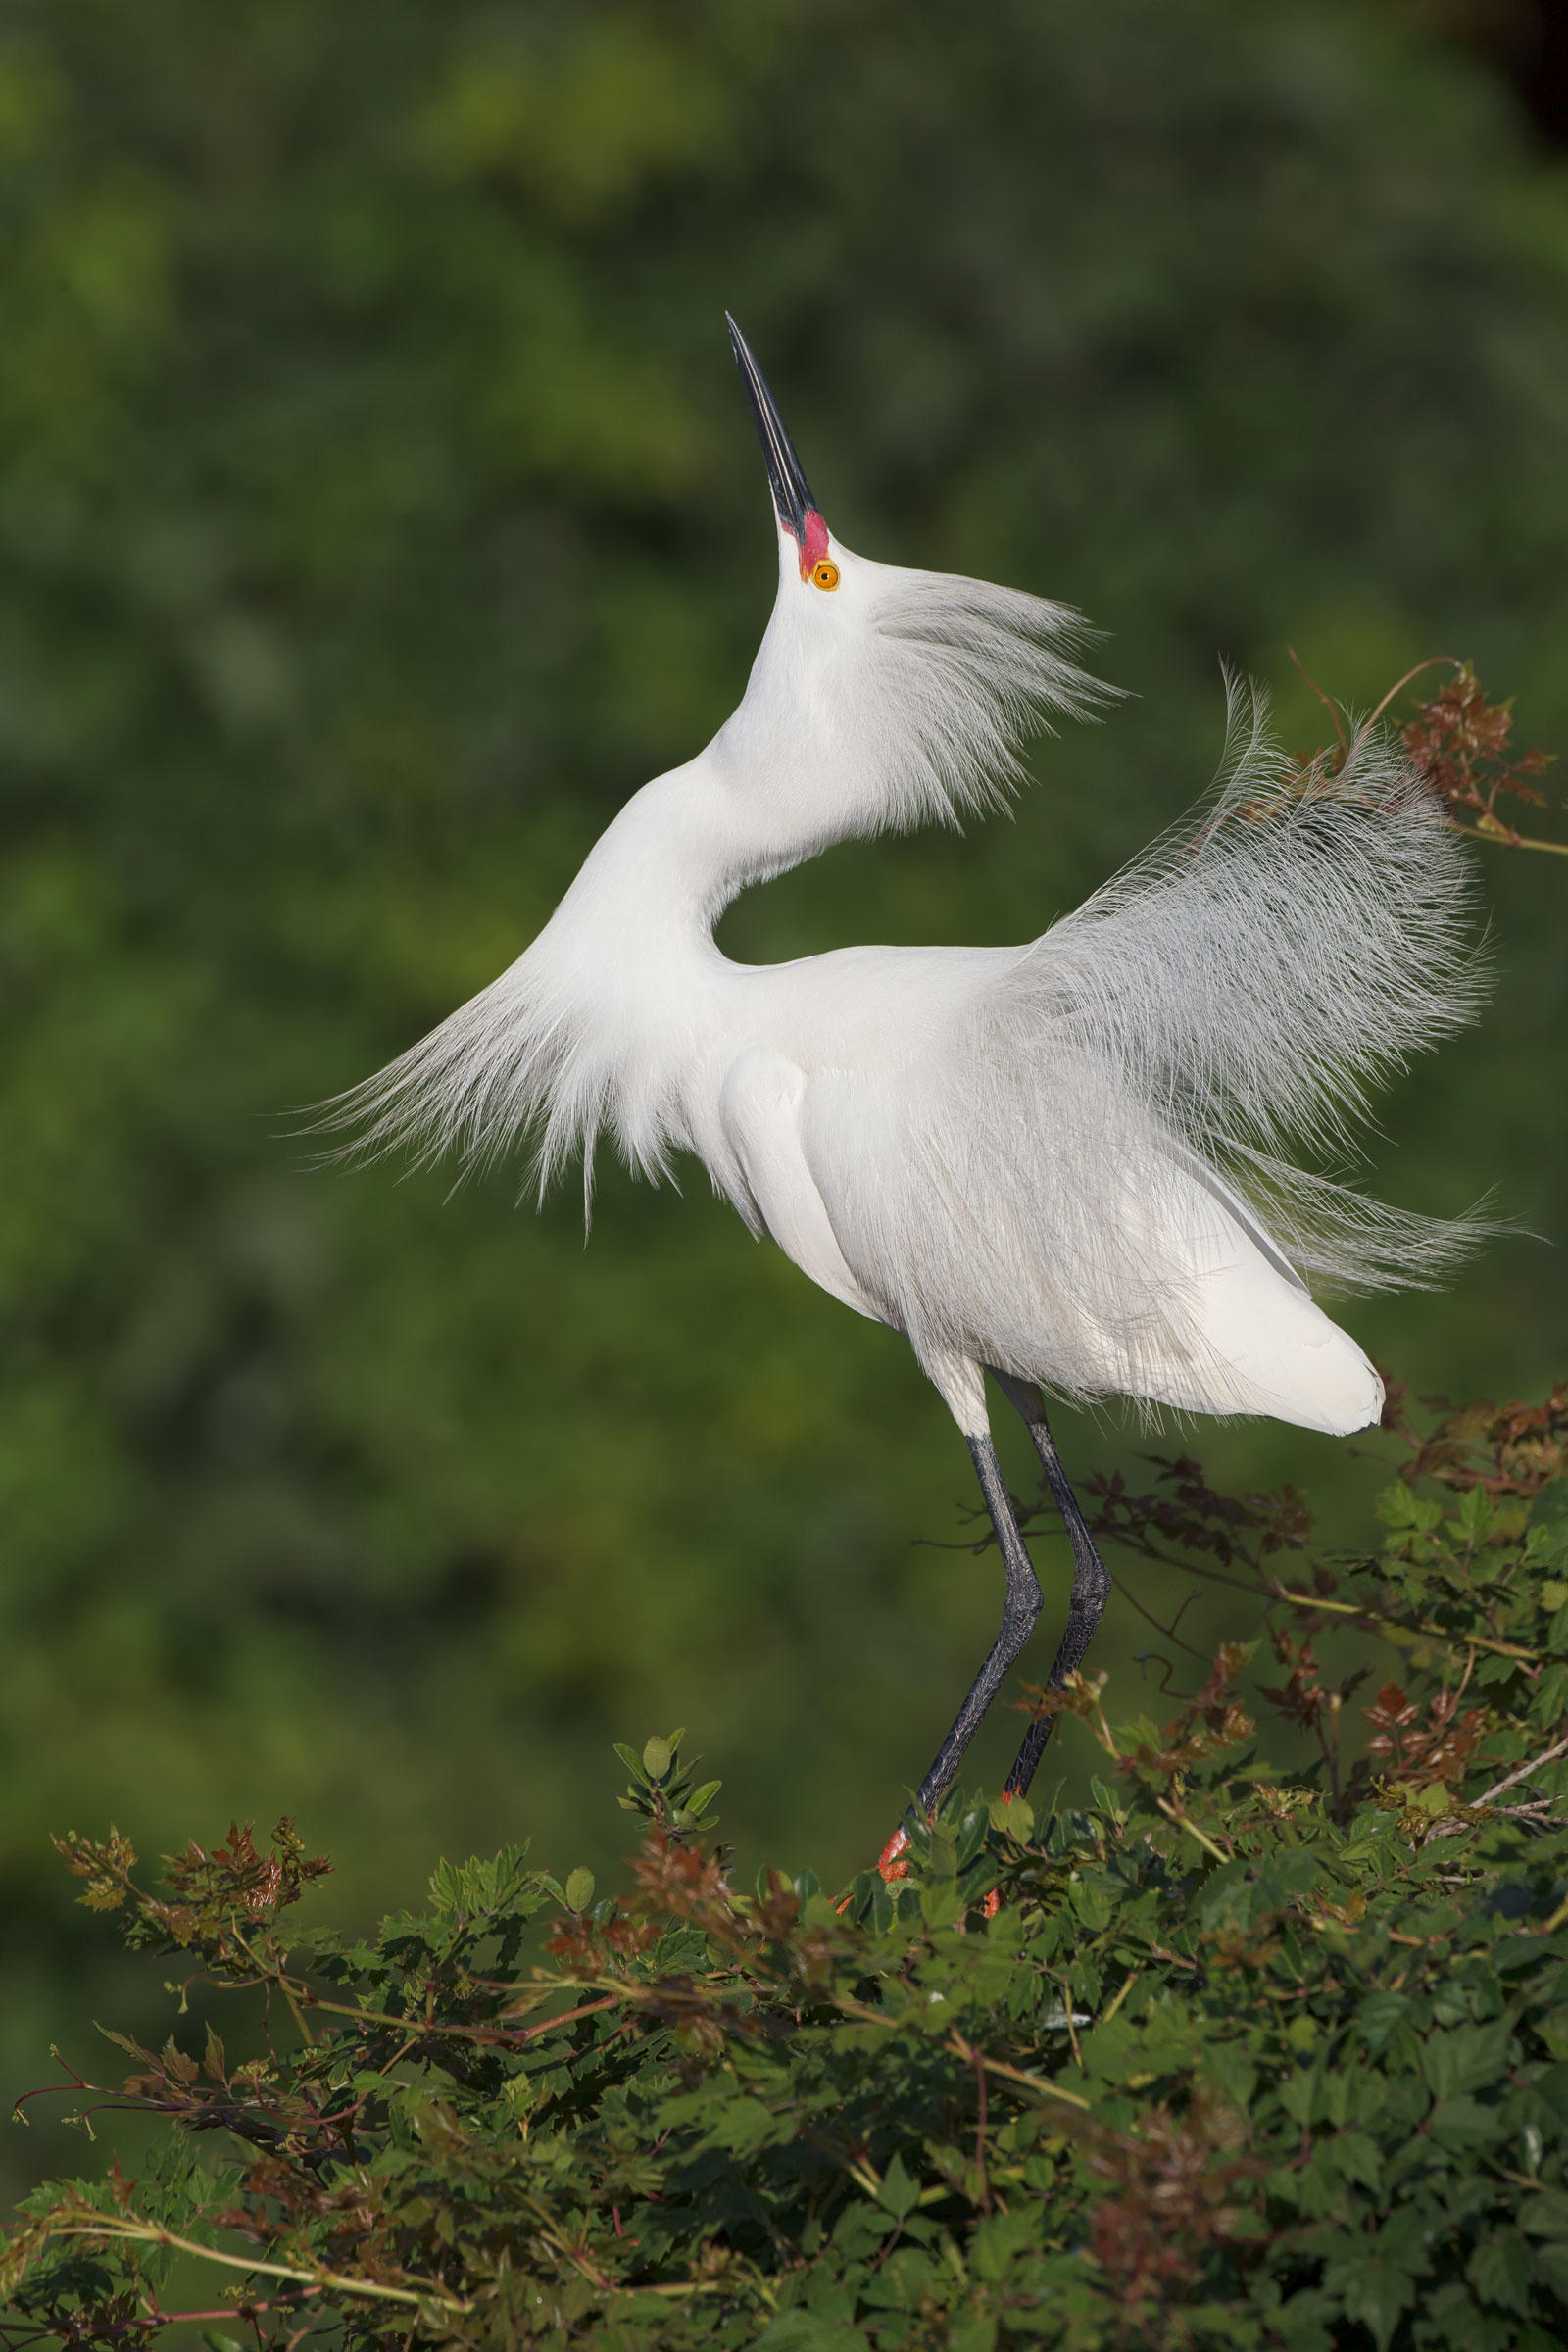 How to Photograph White Birds | Audubon